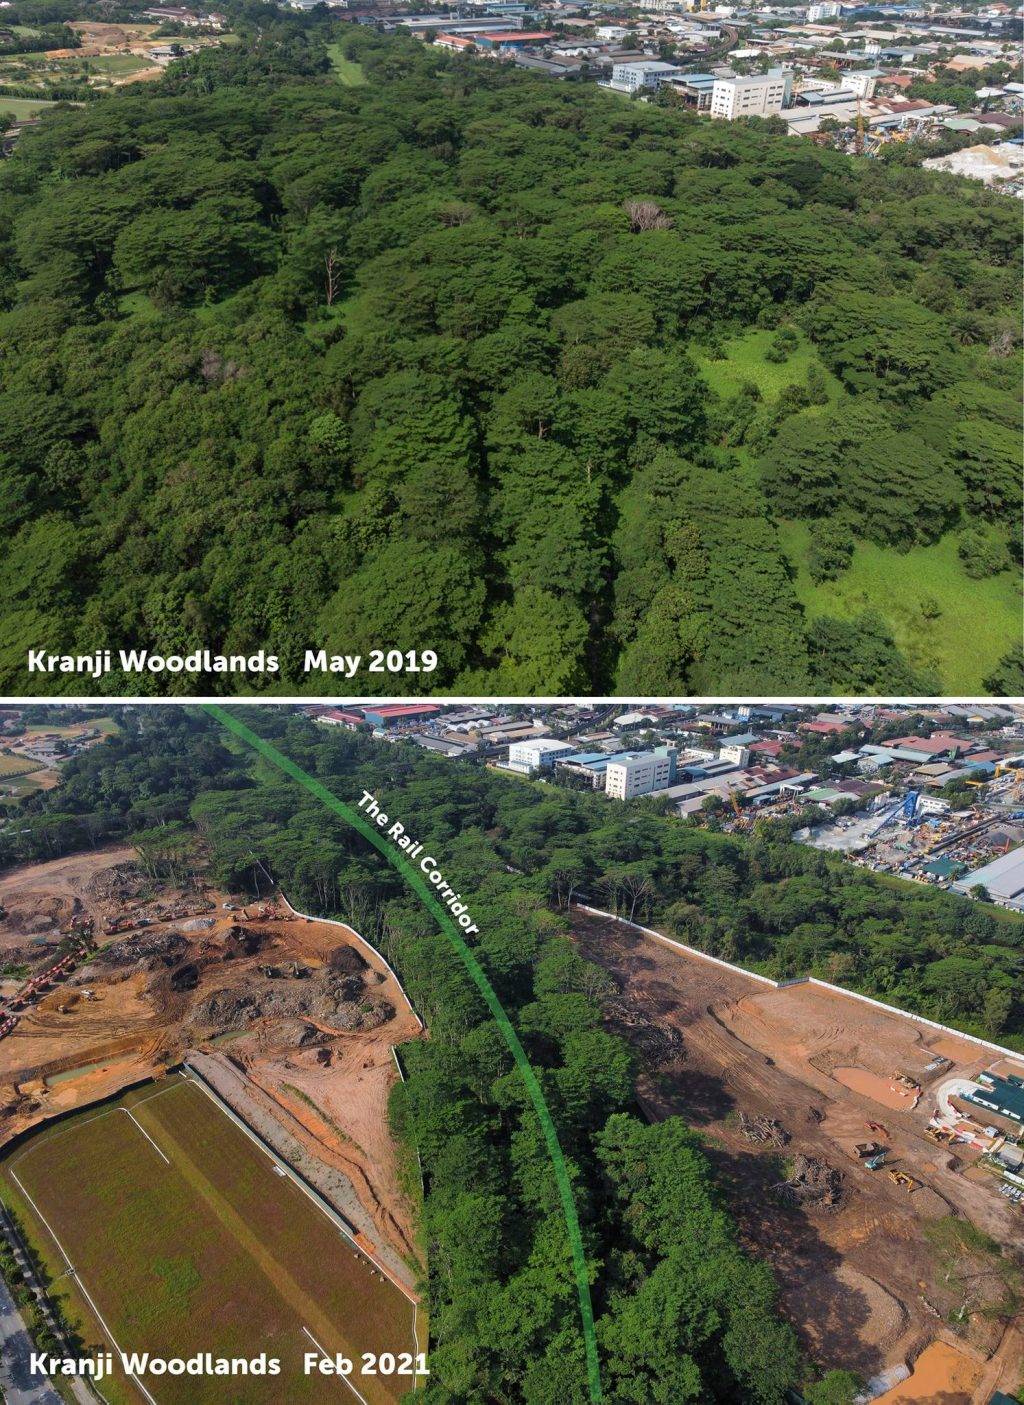 Kranji附近一片原始森林突然被清空開發！本地自然愛好者們表示十分震驚，可惜了